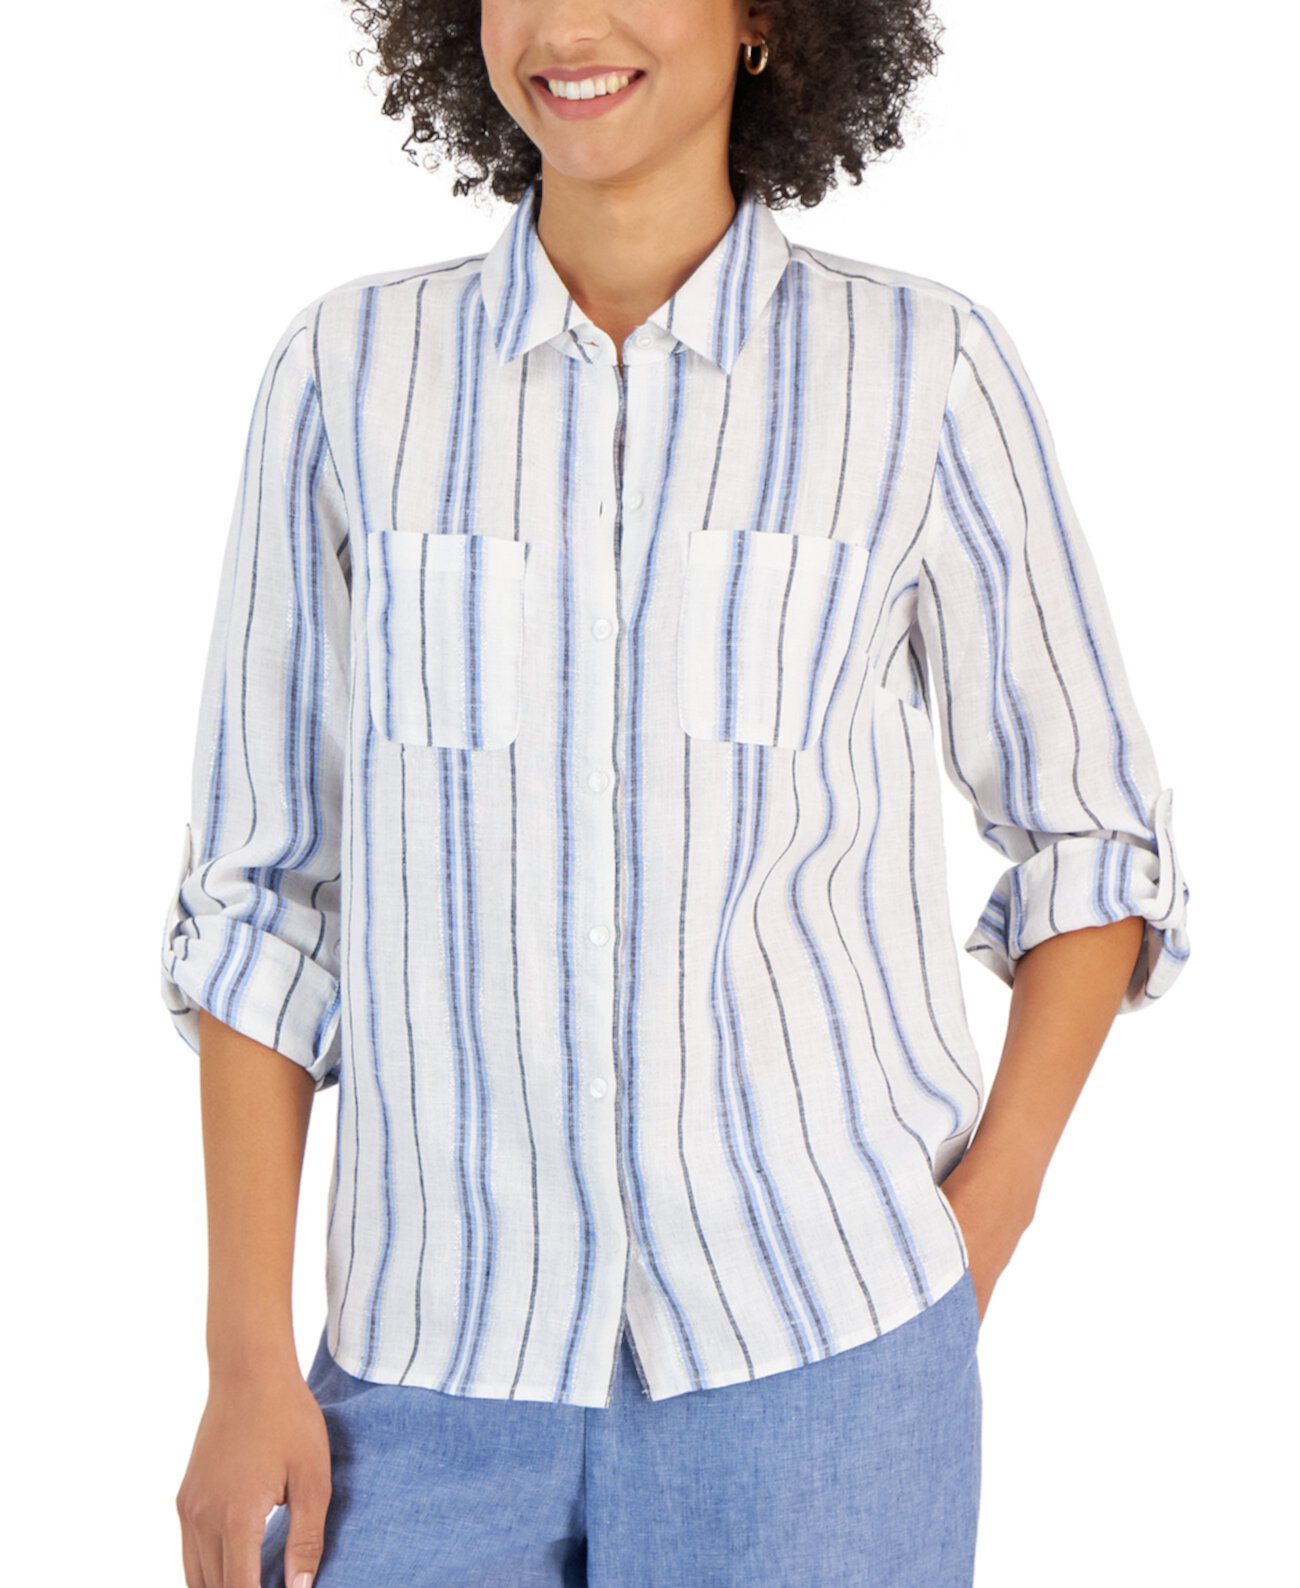 Женская льняная рубашка в металлическую полоску, созданная для Macy's Charter Club